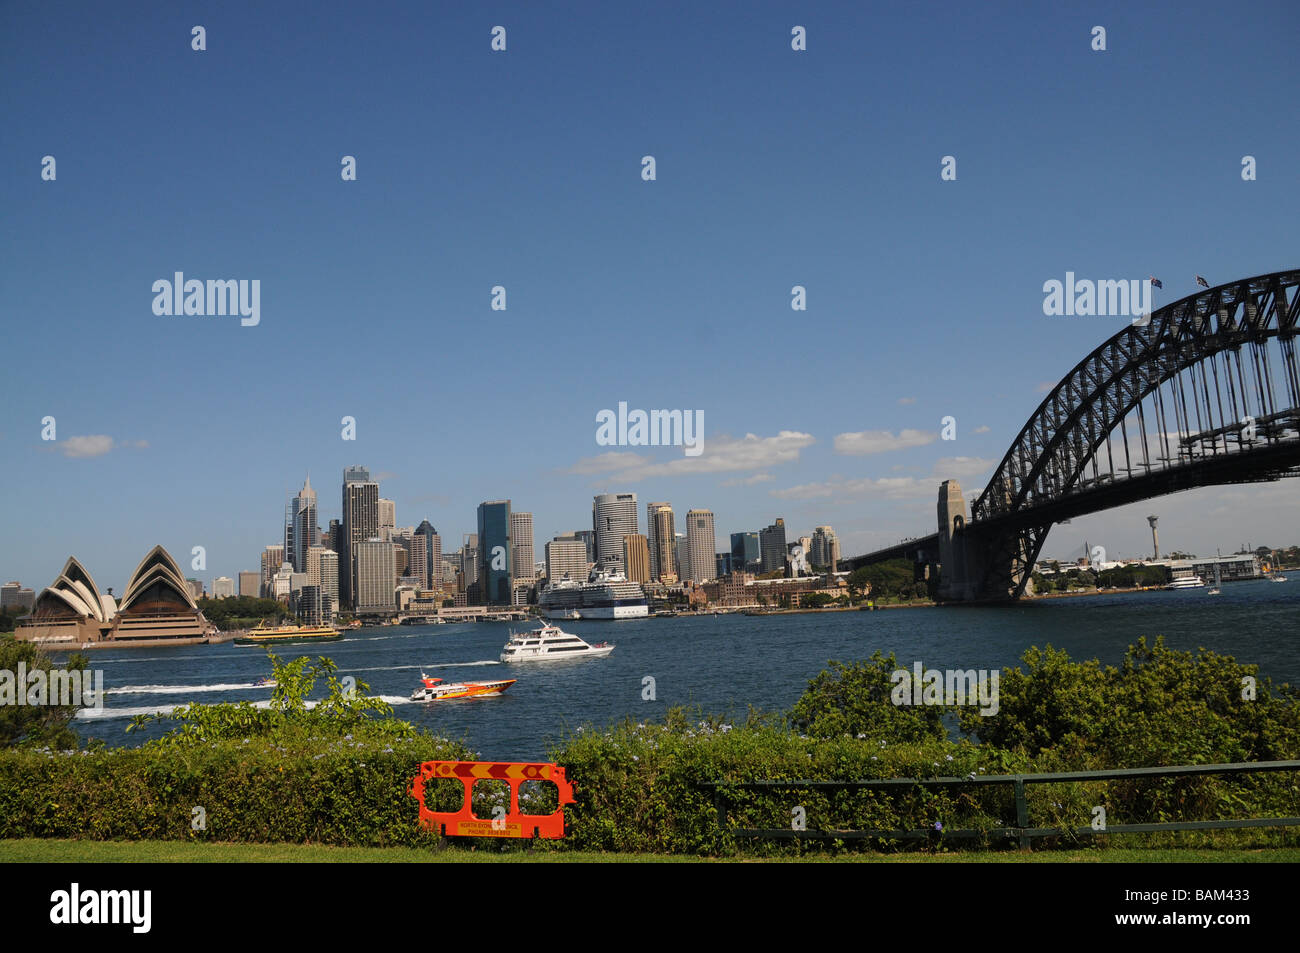 Sydney, Australie,Vue de la ville avec pont et de l'Opéra.icônes de l'Australie,le pont ouvert en 1932, l'Opéra en 2003 Banque D'Images